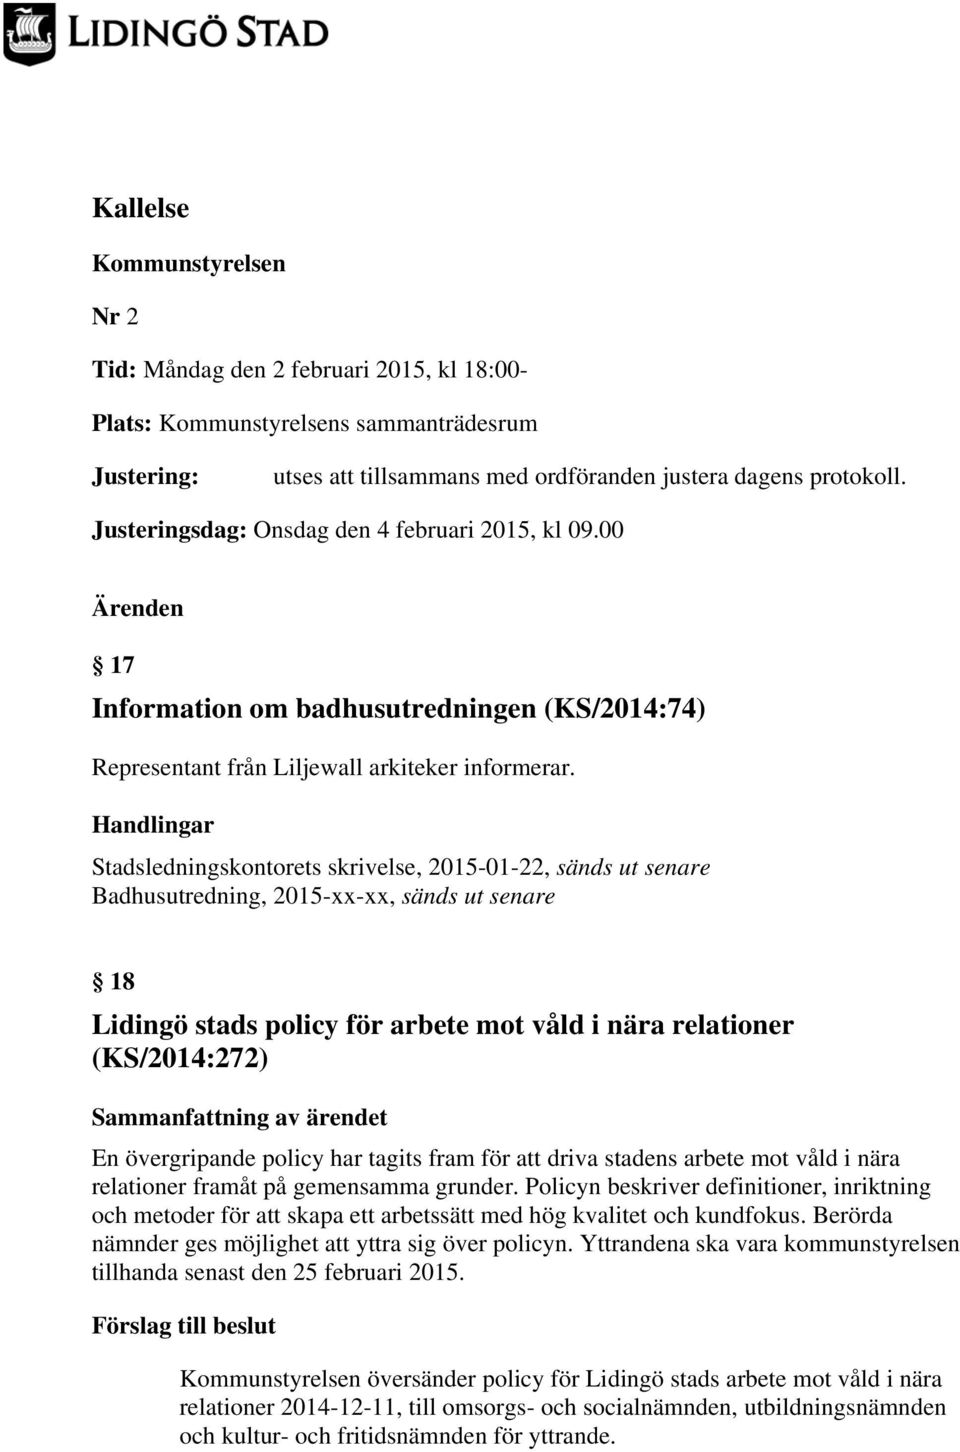 Stadsledningskontorets skrivelse, 2015-01-22, sänds ut senare Badhusutredning, 2015-xx-xx, sänds ut senare 18 Lidingö stads policy för arbete mot våld i nära relationer (KS/2014:272) En övergripande